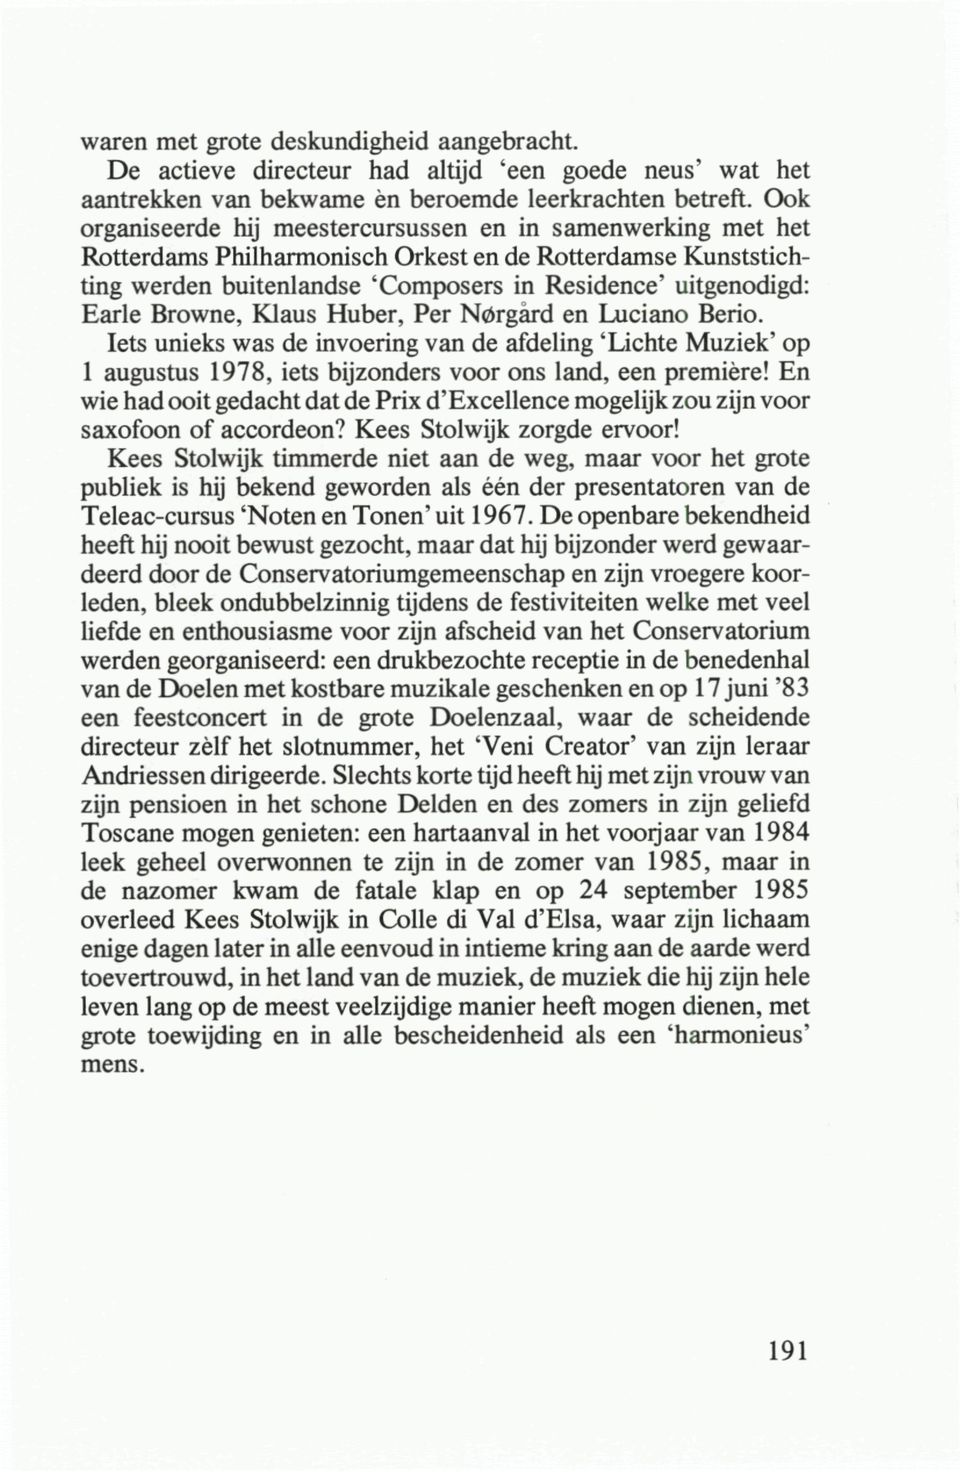 Browne, Klaus Huber, Per Nörgard en Luciano Berio. lets unieks was de invoering van de afdeling 'Lichte Muziek' op 1 augustus 1978, iets bijzonders voor ons land, een première!